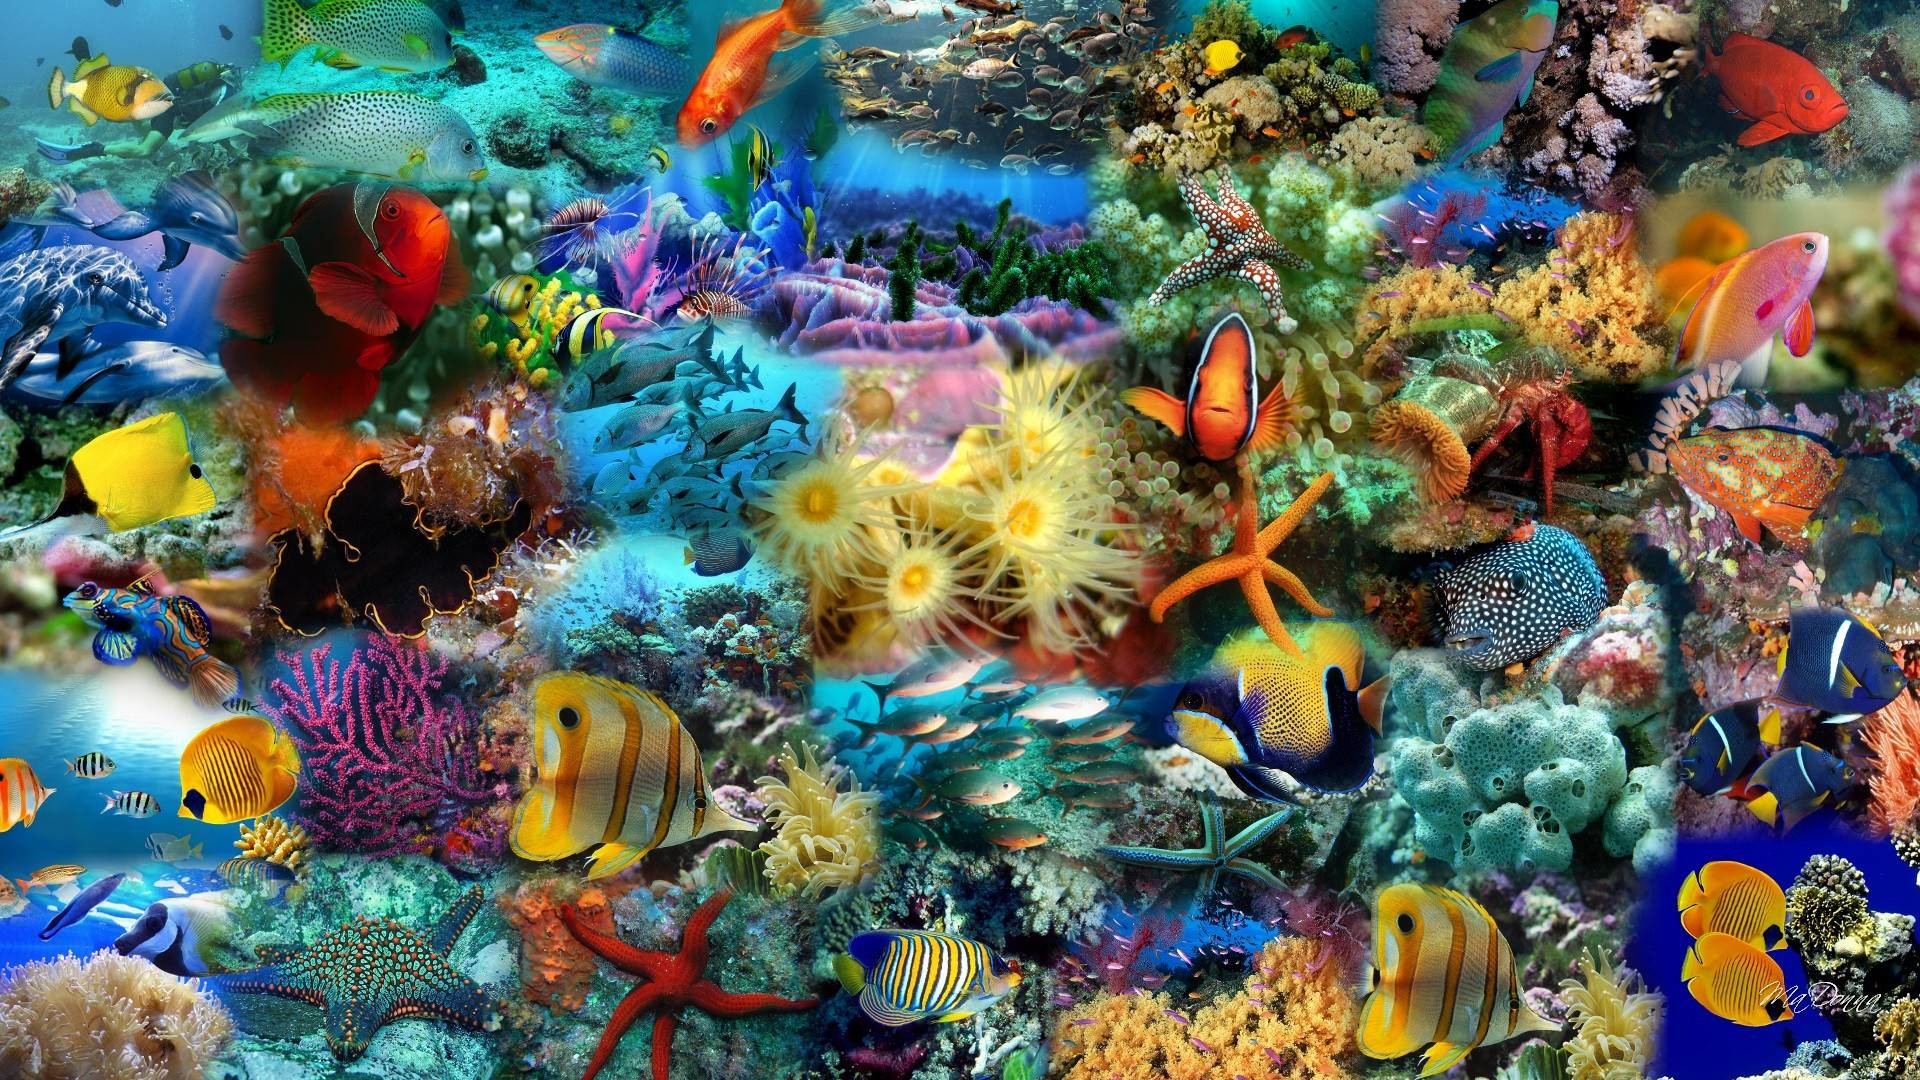 水魚の壁紙無料ダウンロード,サンゴ礁,リーフ,海洋生物学,サンゴ礁の魚,石サンゴ